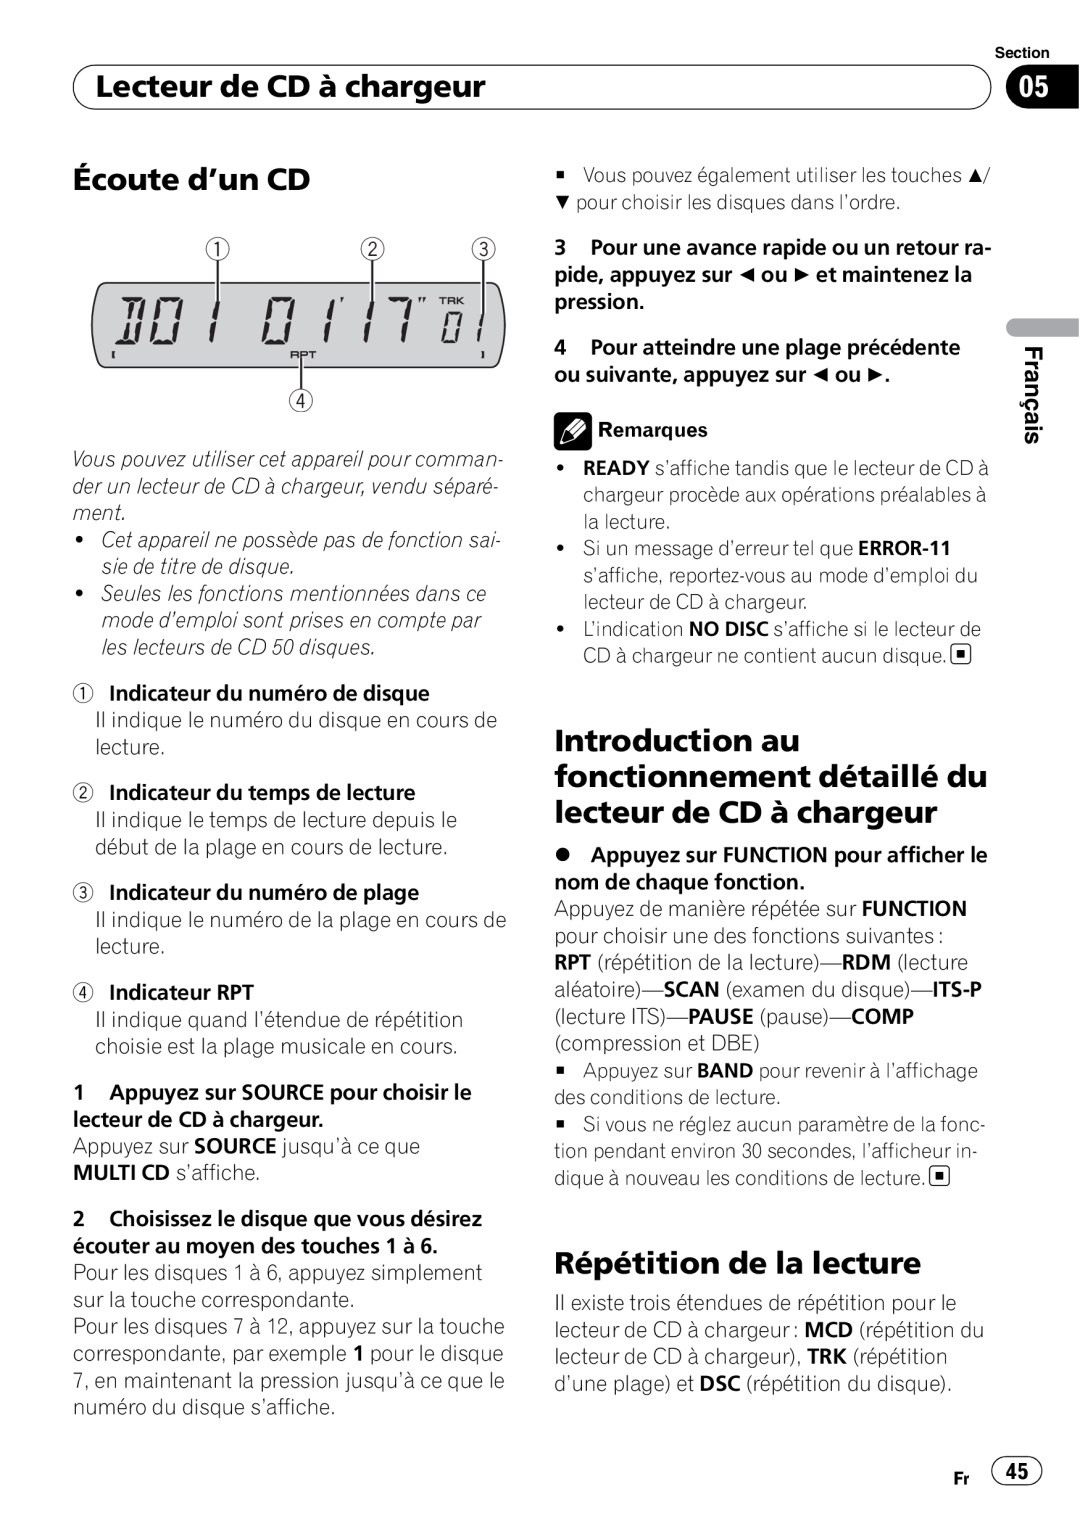 Sony DEH-P2900MP operation manual Lecteur de CD à chargeur, Écoute d’un CD, Répétition de la lecture, Français 